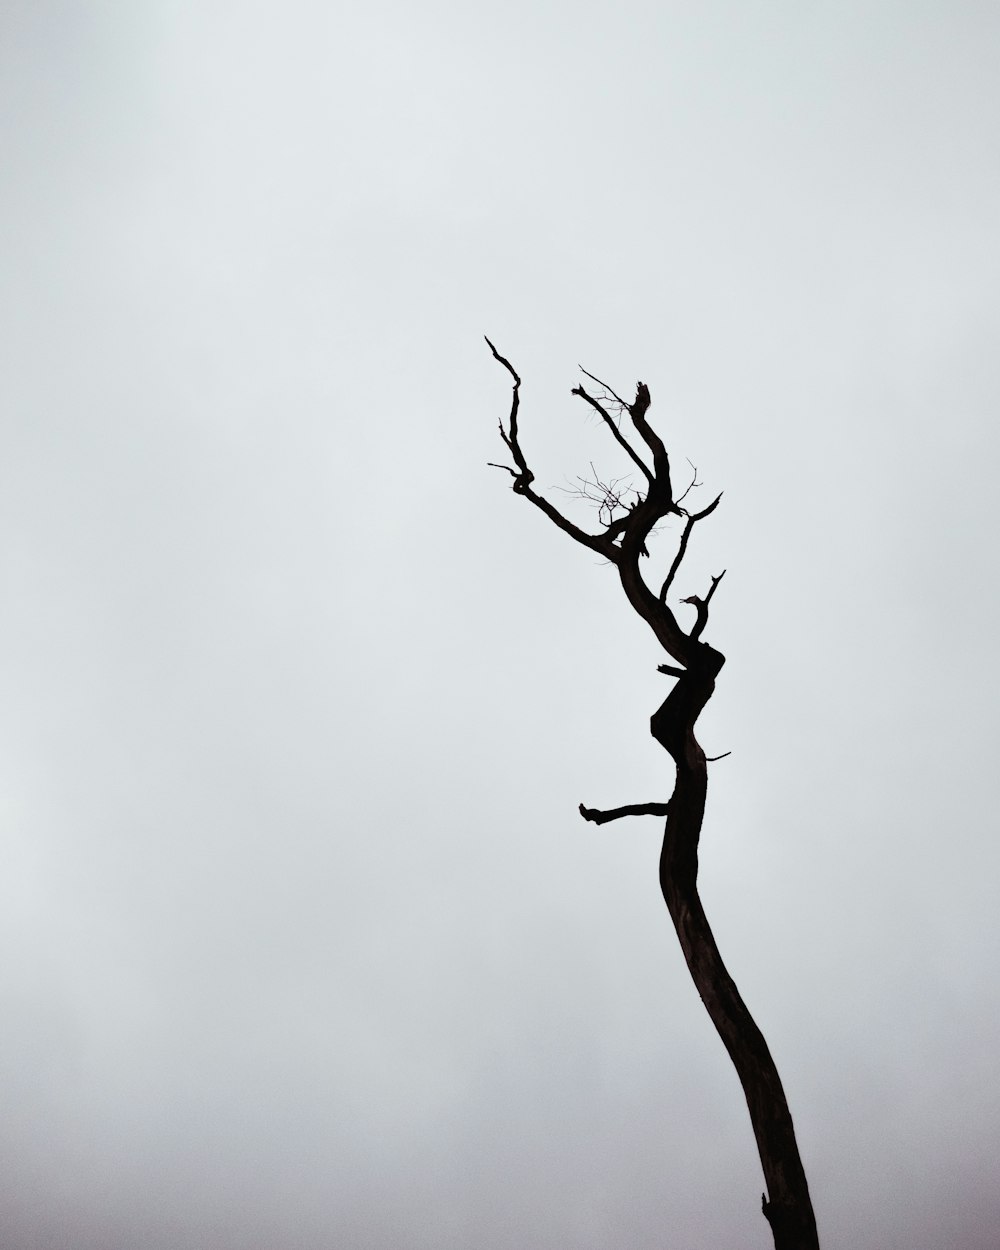 rama de árbol marrón con nubes blancas